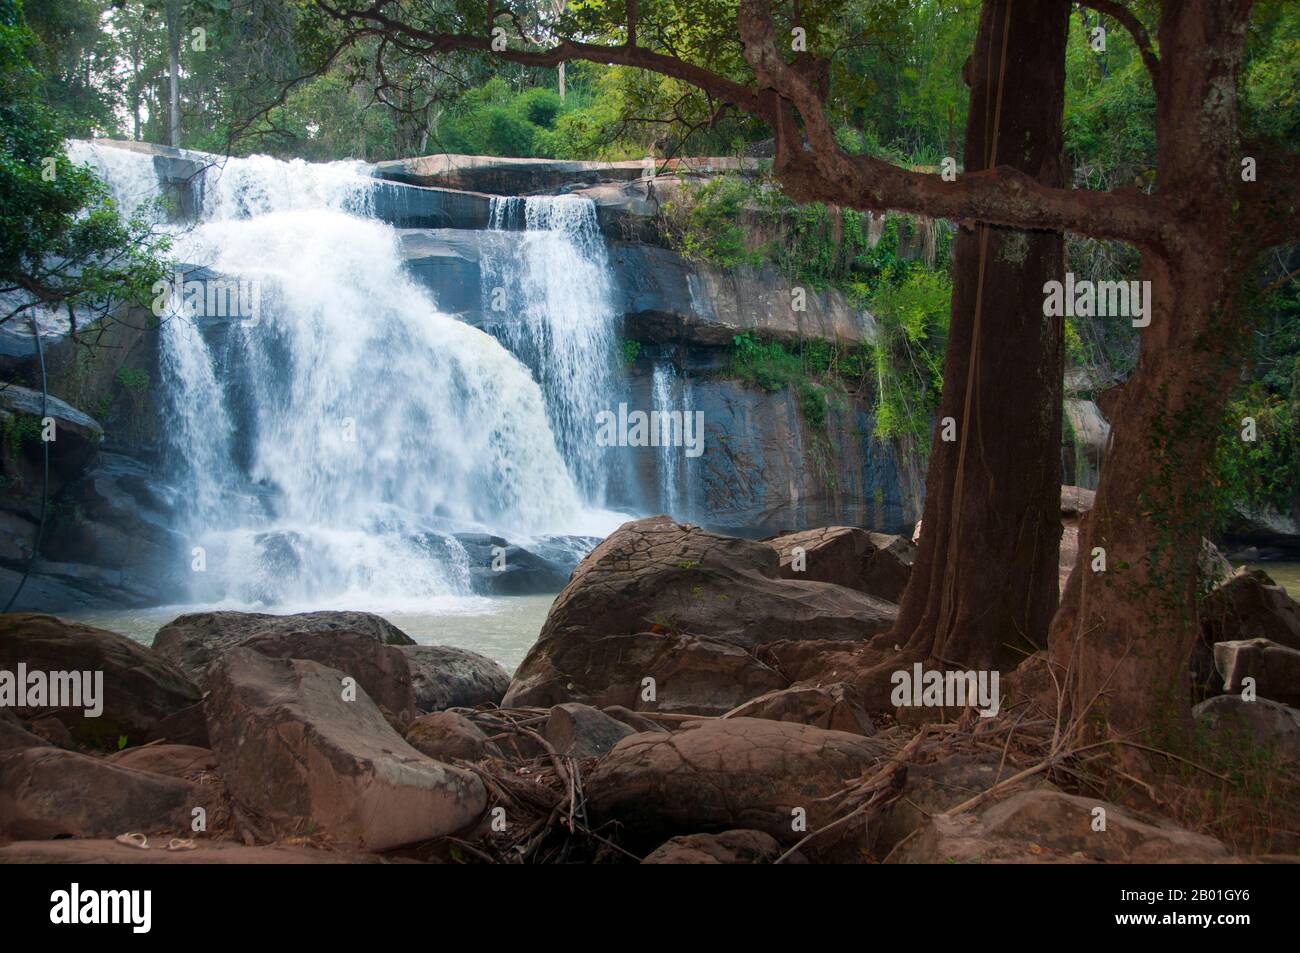 Thailand: Tat Huang Wasserfall (Nam Tok Nam Hueang), auch bekannt als Thai-Lao Wasserfall oder internationaler Wasserfall, Phu Suan Sai Nationalpark, Bezirk Na Haeo, Provinz Loei. Die Provinz Loei (Thai: เลย) befindet sich im oberen Nordosten Thailands. Die benachbarten Provinzen sind (von Osten nach rechts) Nong Khai, Udon Thani, Nongbua Lamphu, Khon Kaen, Phetchabun, Phitsanulok. Im Norden grenzt sie an die Provinzen Xaignabouli und Vientiane in Laos. Die Provinz ist von niedrigen Bergen bedeckt, während die Hauptstadt Loei in einem fruchtbaren Becken liegt. Stockfoto